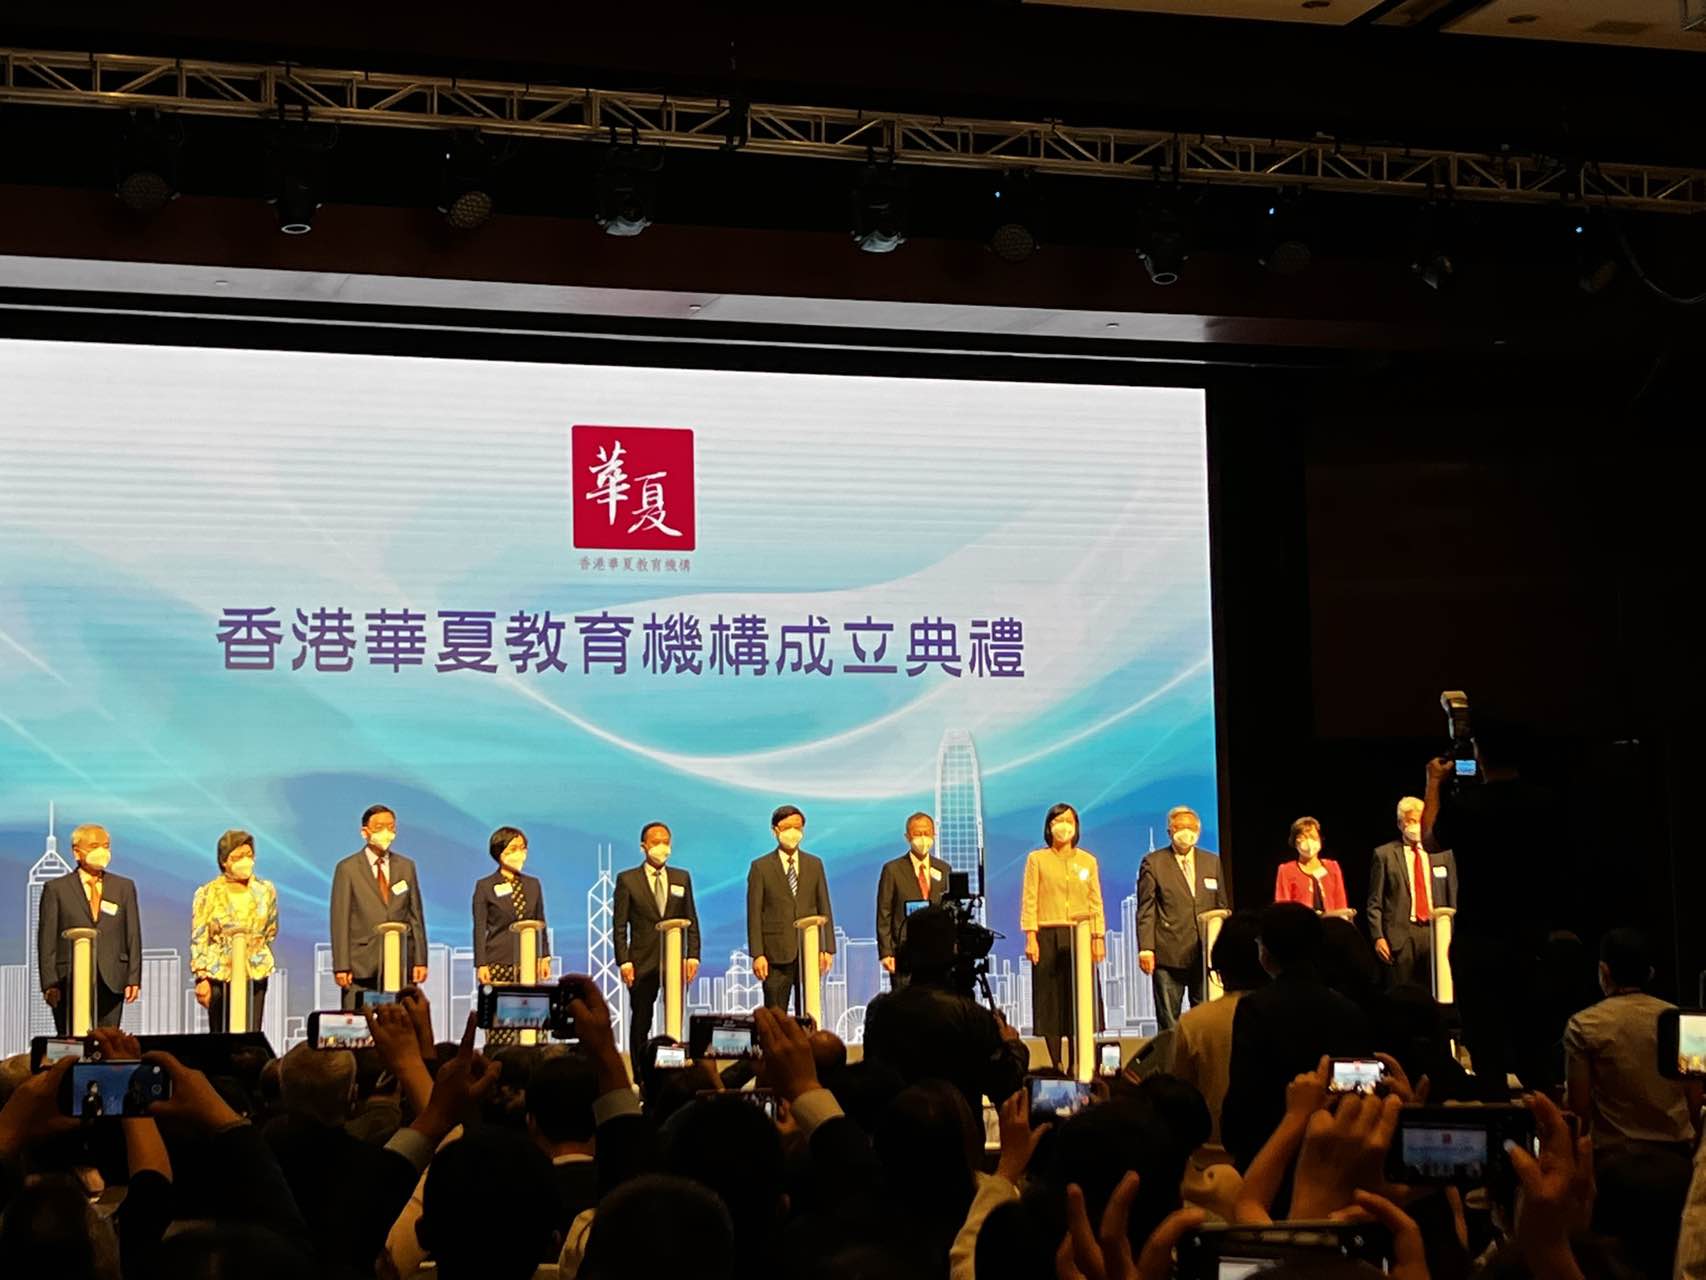 本會受邀參加华夏教育機構成立大会暨“香港教育新篇章 ”高峰论坛